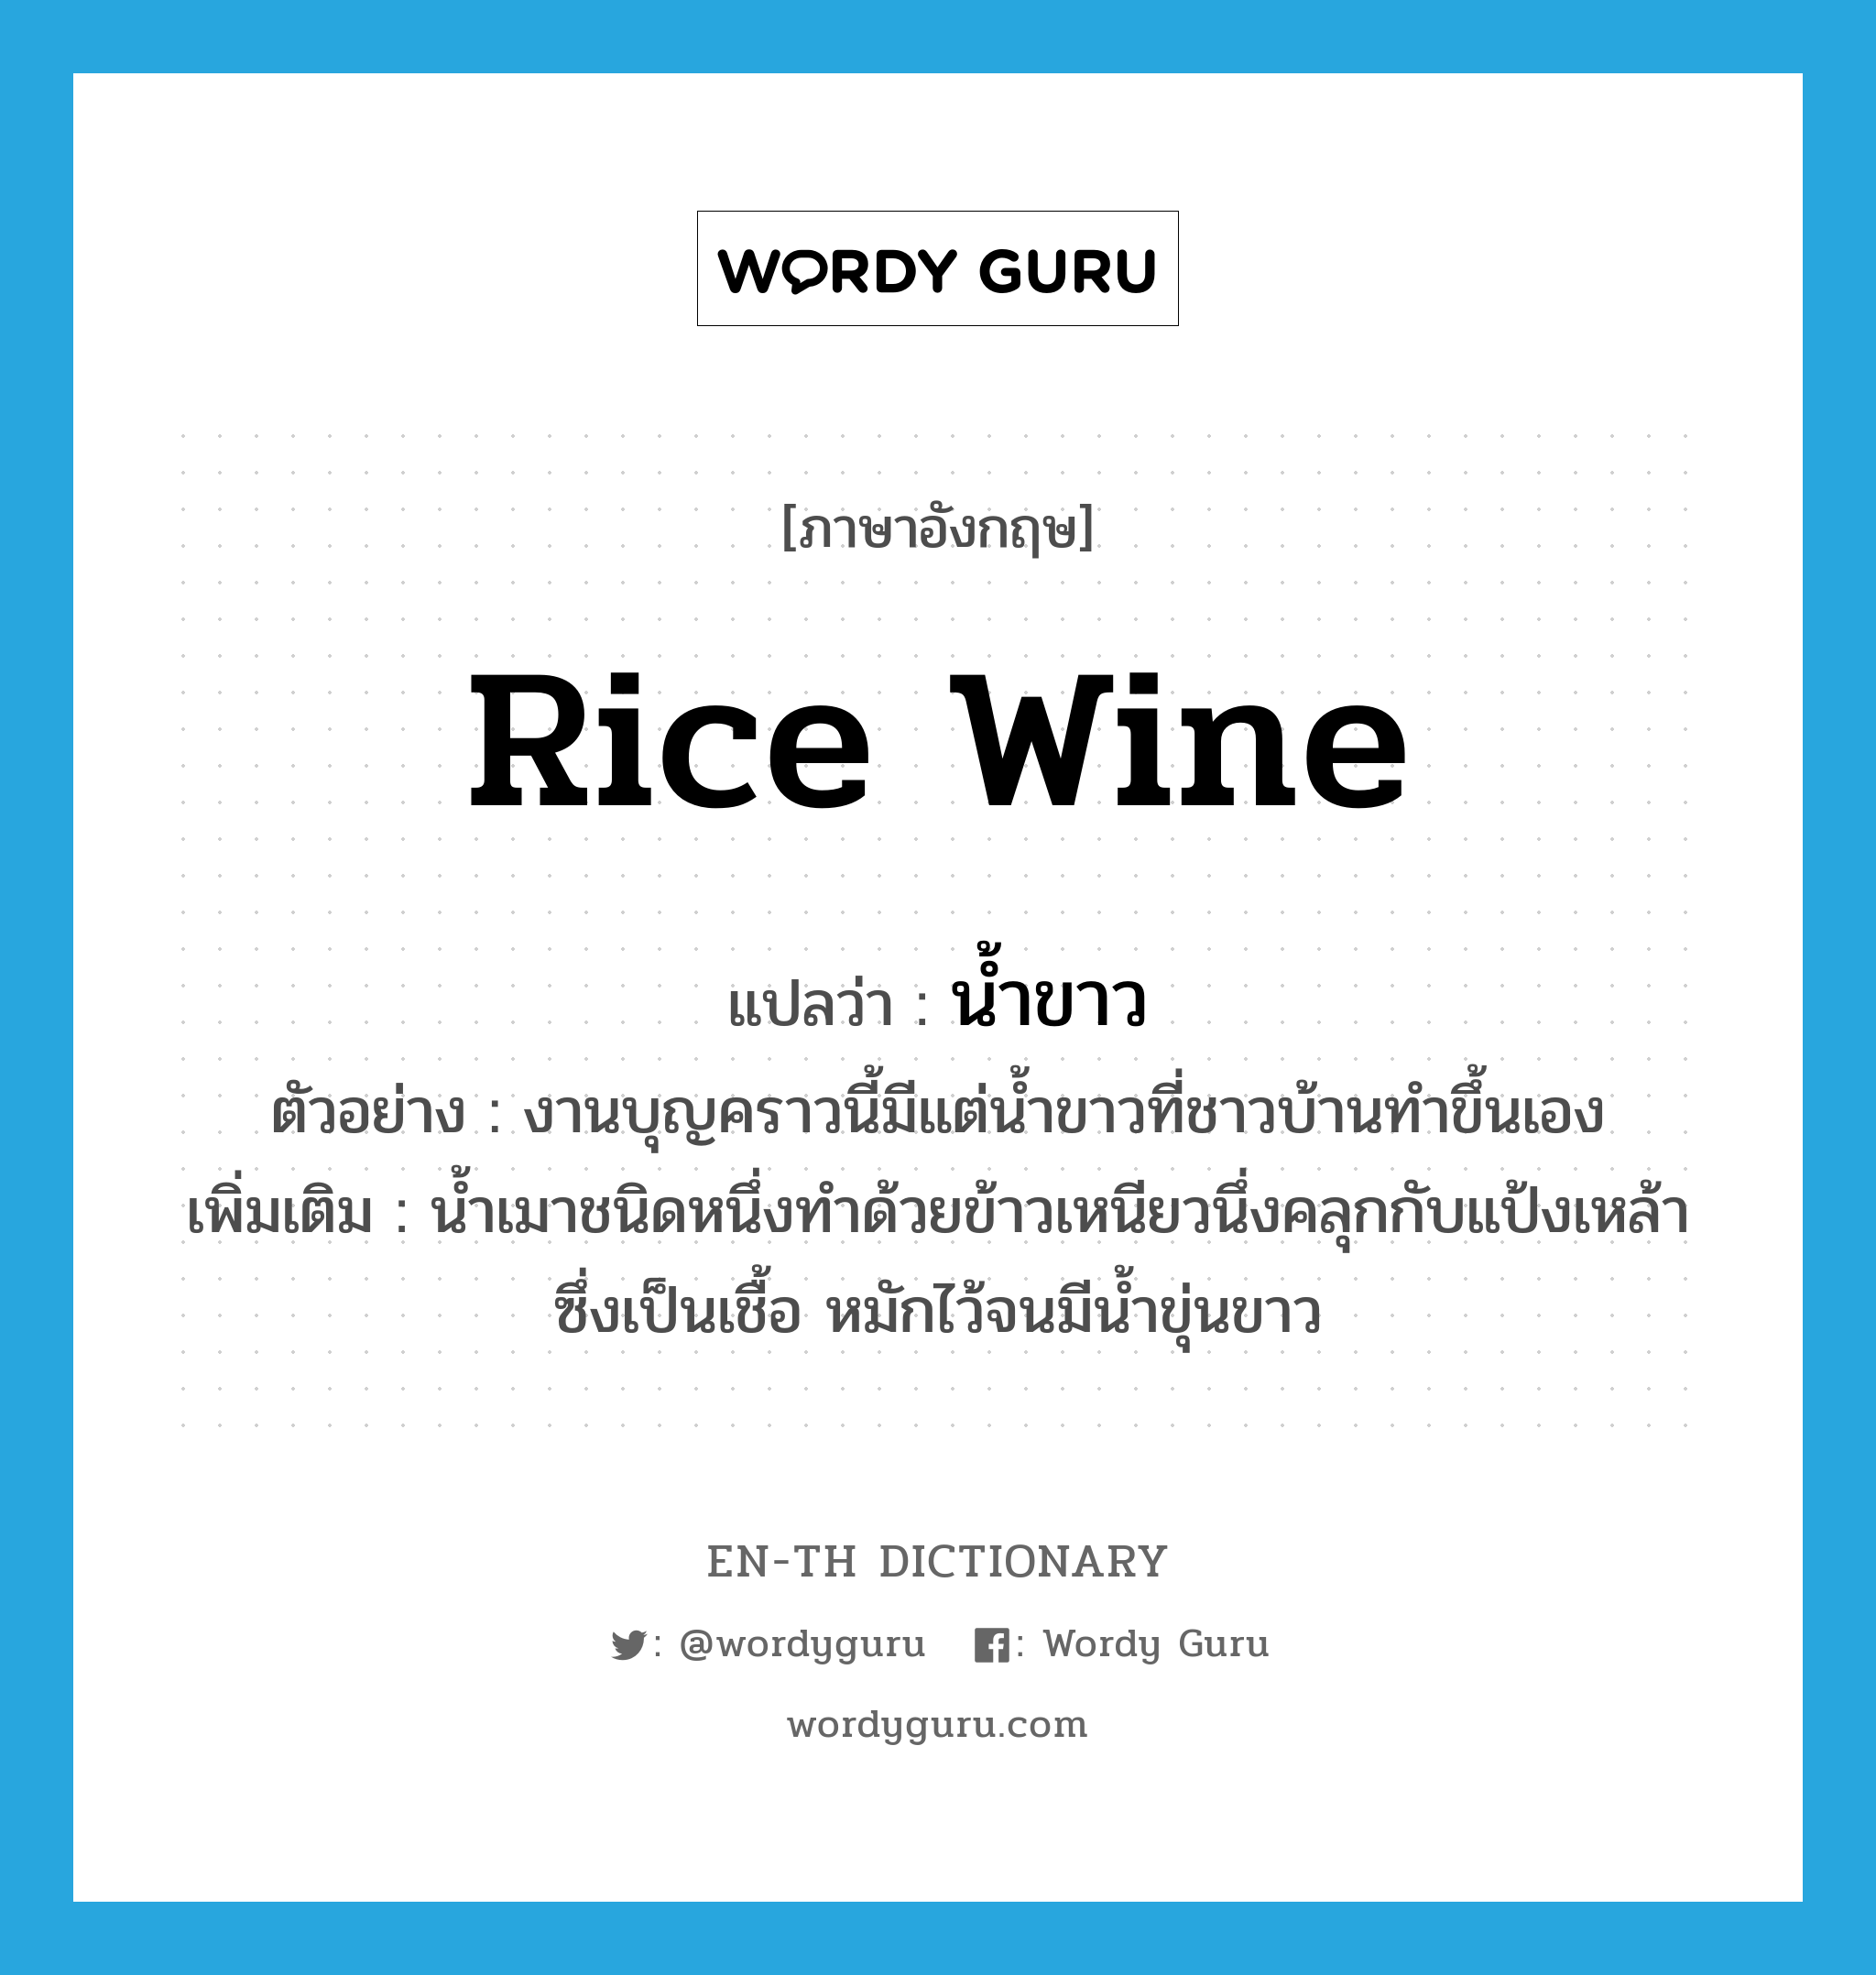 rice wine แปลว่า?, คำศัพท์ภาษาอังกฤษ rice wine แปลว่า น้ำขาว ประเภท N ตัวอย่าง งานบุญคราวนี้มีแต่น้ำขาวที่ชาวบ้านทำขึ้นเอง เพิ่มเติม น้ำเมาชนิดหนึ่งทำด้วยข้าวเหนียวนึ่งคลุกกับแป้งเหล้าซึ่งเป็นเชื้อ หมักไว้จนมีน้ำขุ่นขาว หมวด N